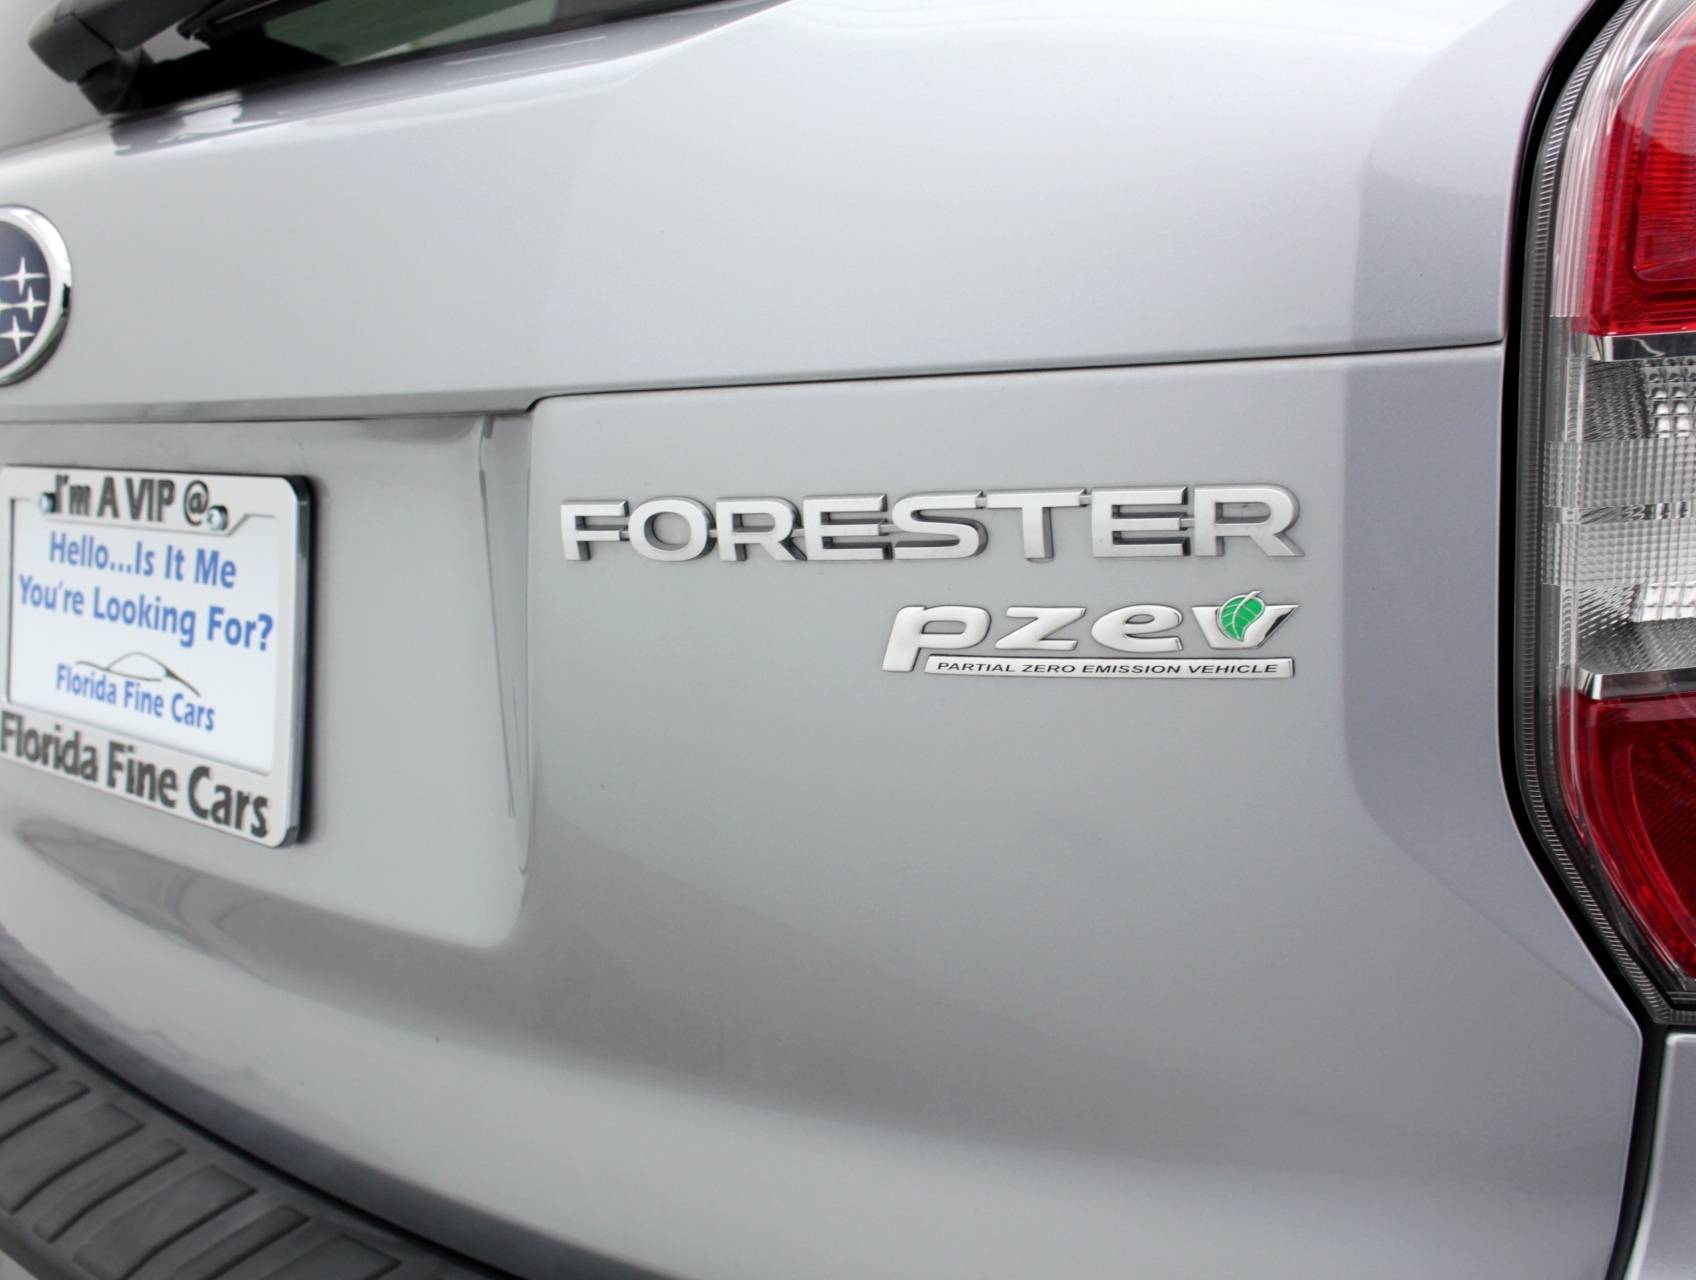 Florida Fine Cars - Used SUBARU FORESTER 2015 MIAMI 2.5I LIMITED